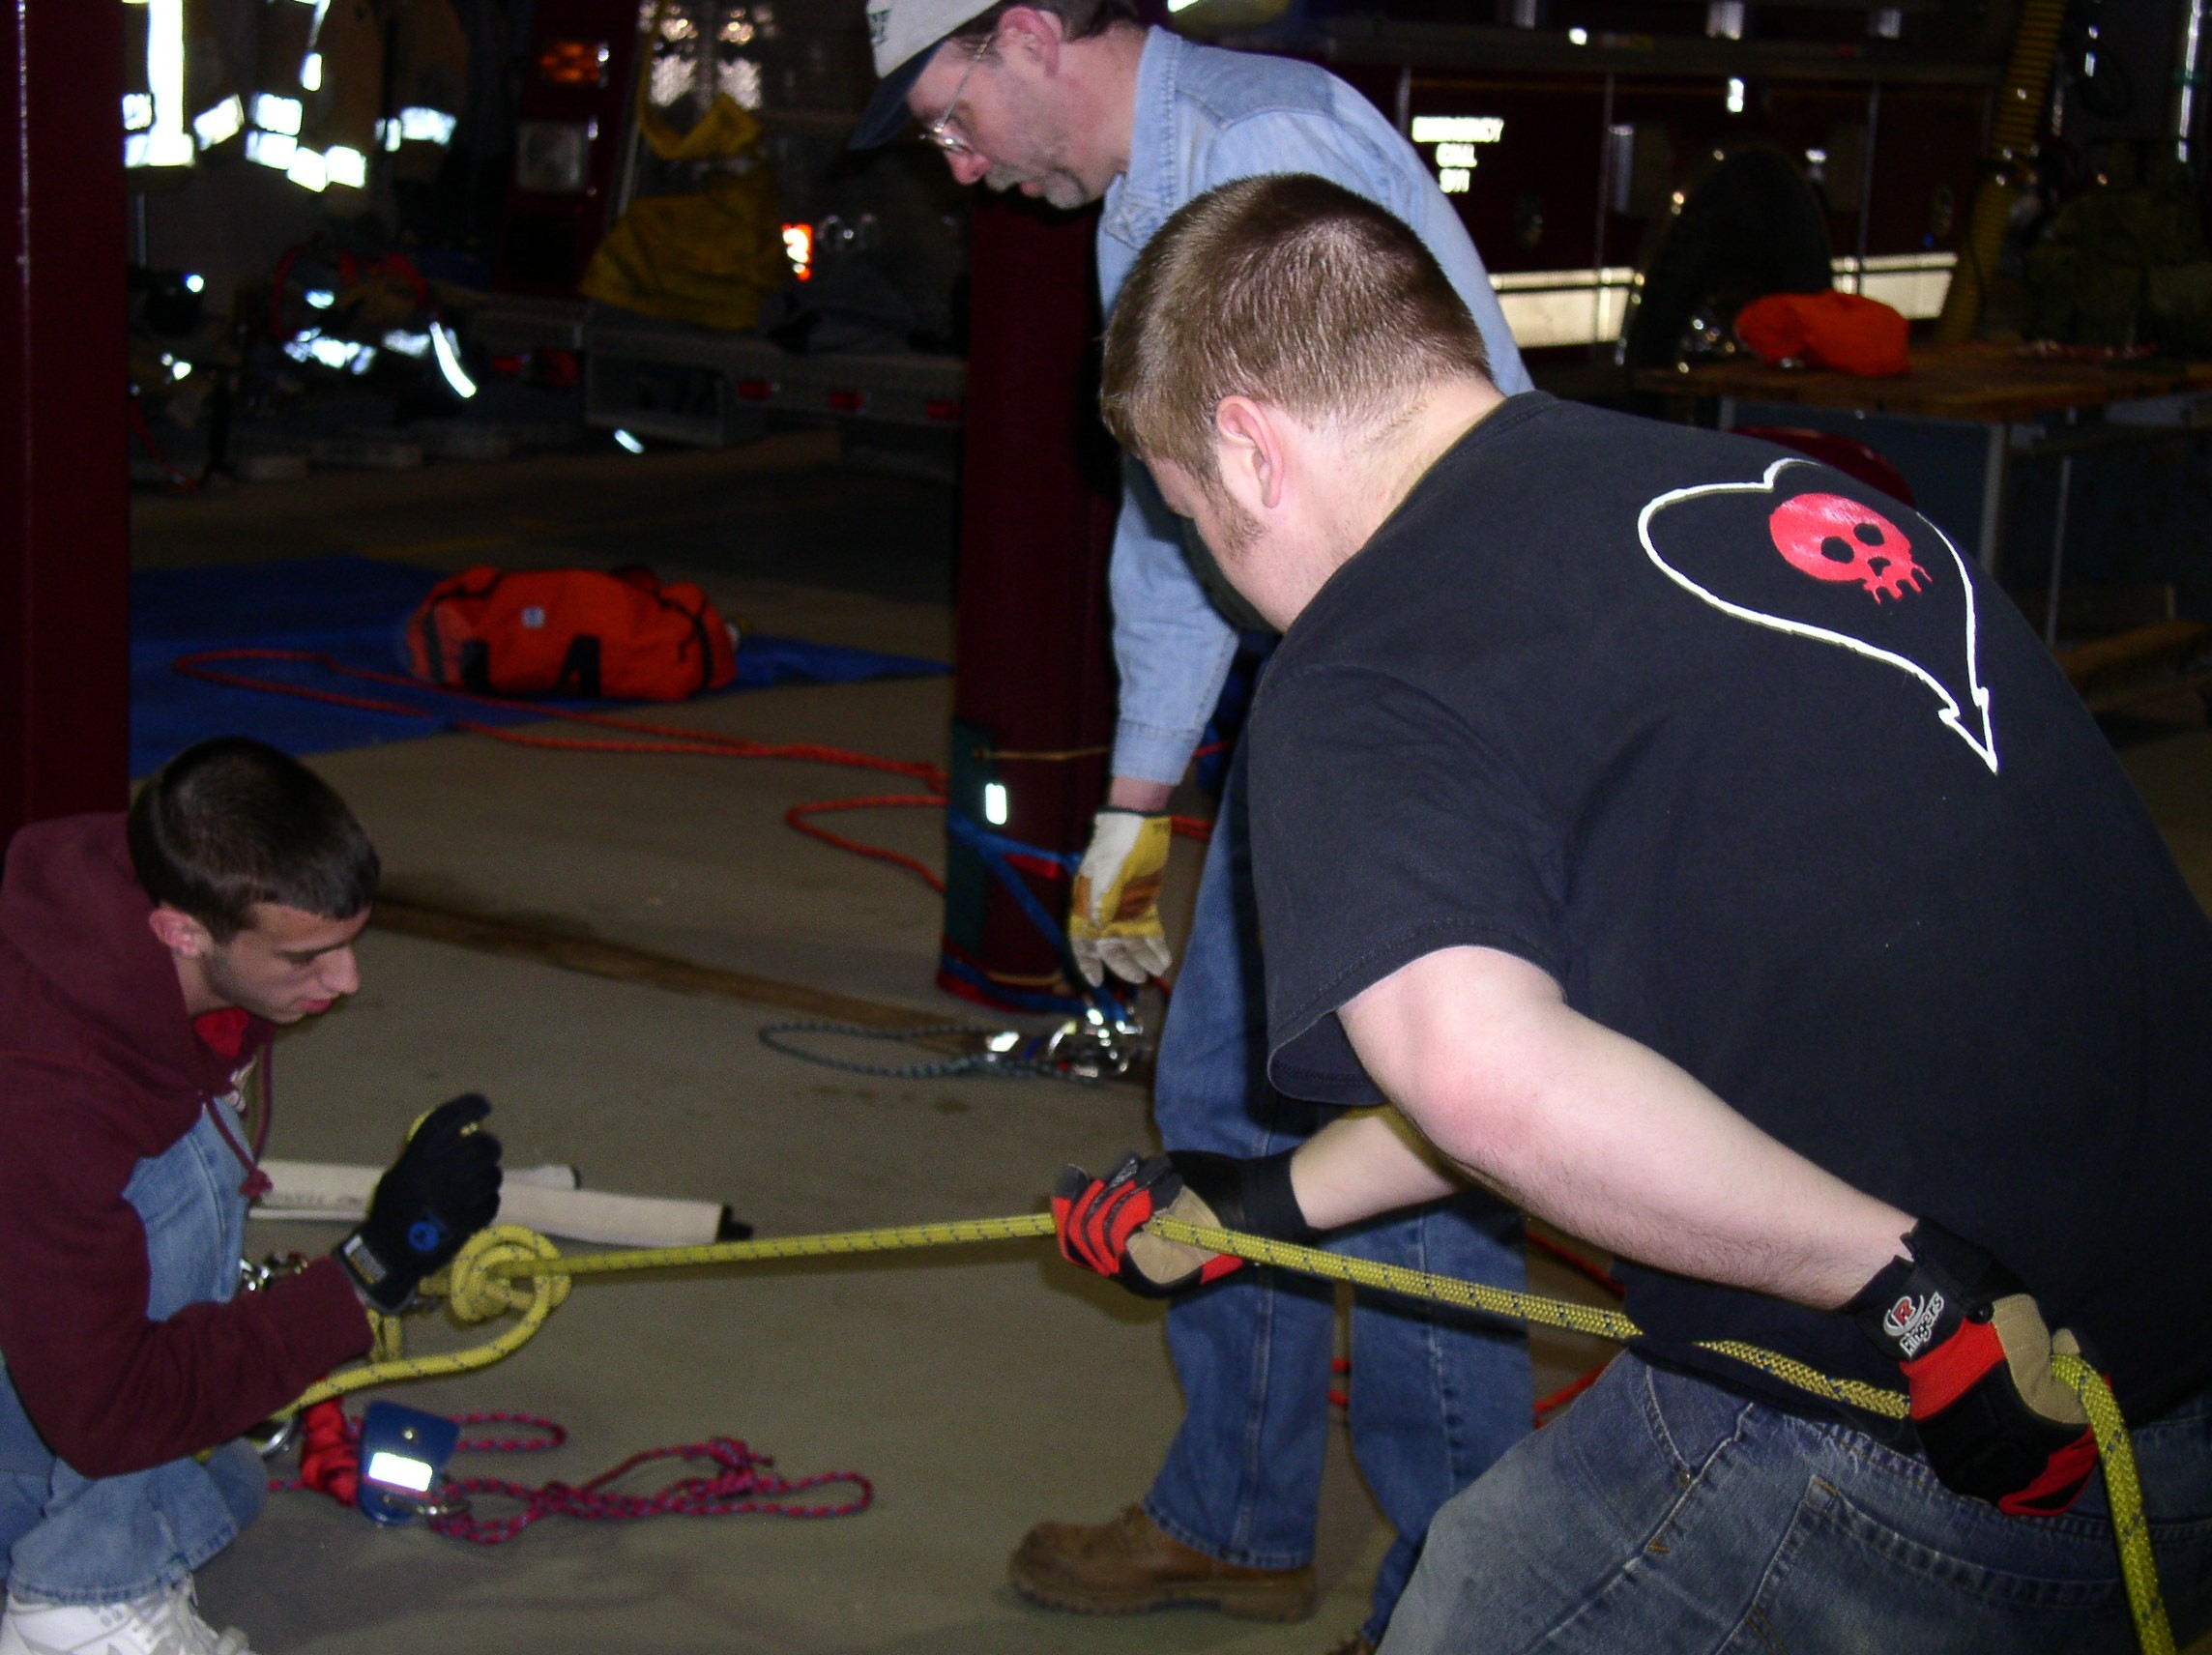 03-16-05  Training - Rope Rescue